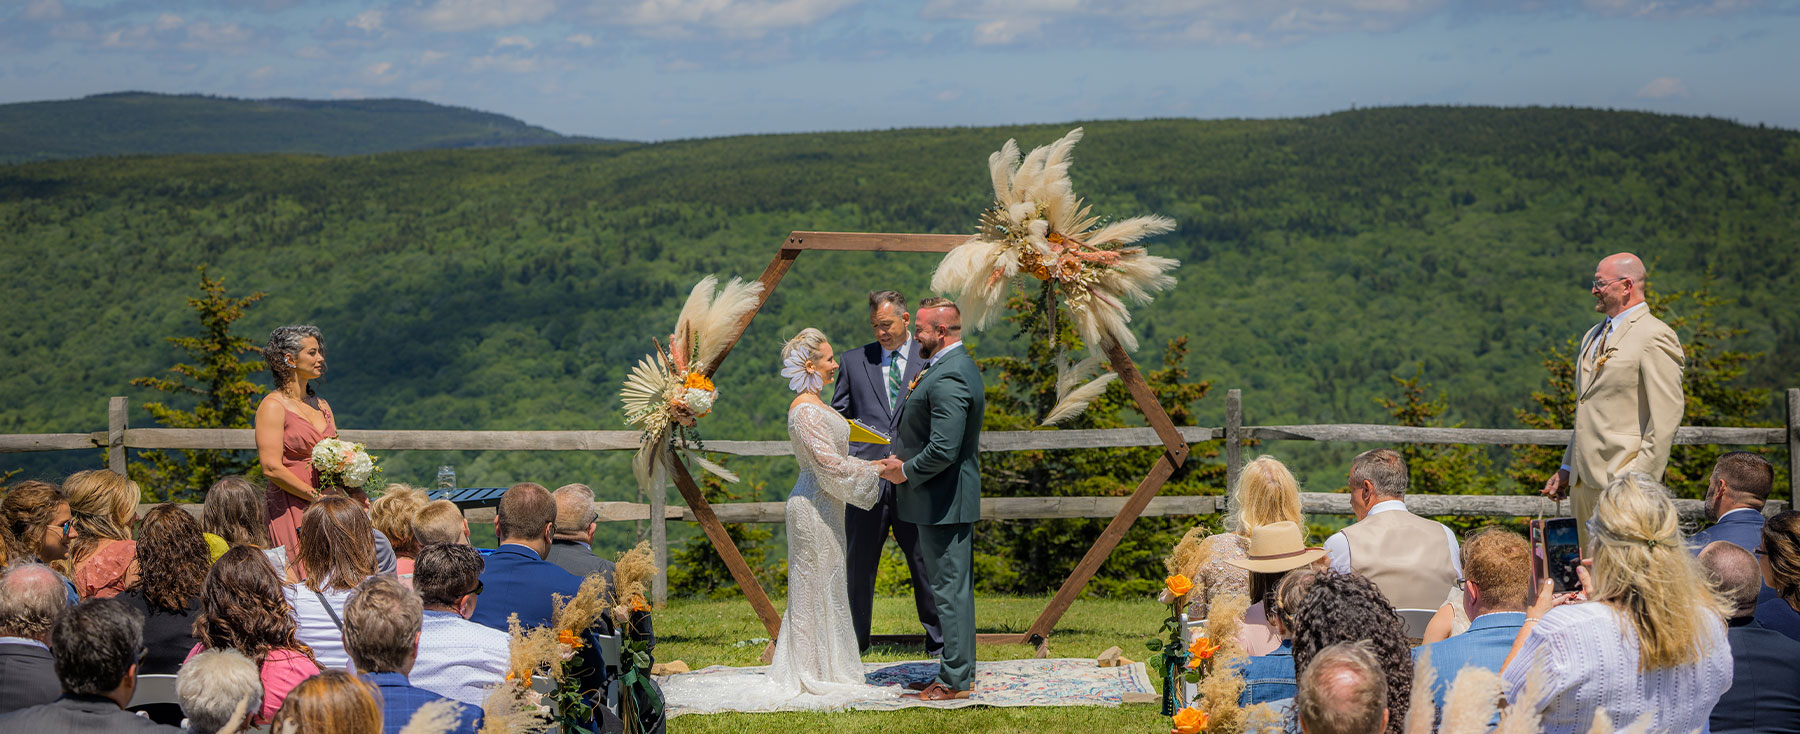 summer wedding at Snowshoe Mountain